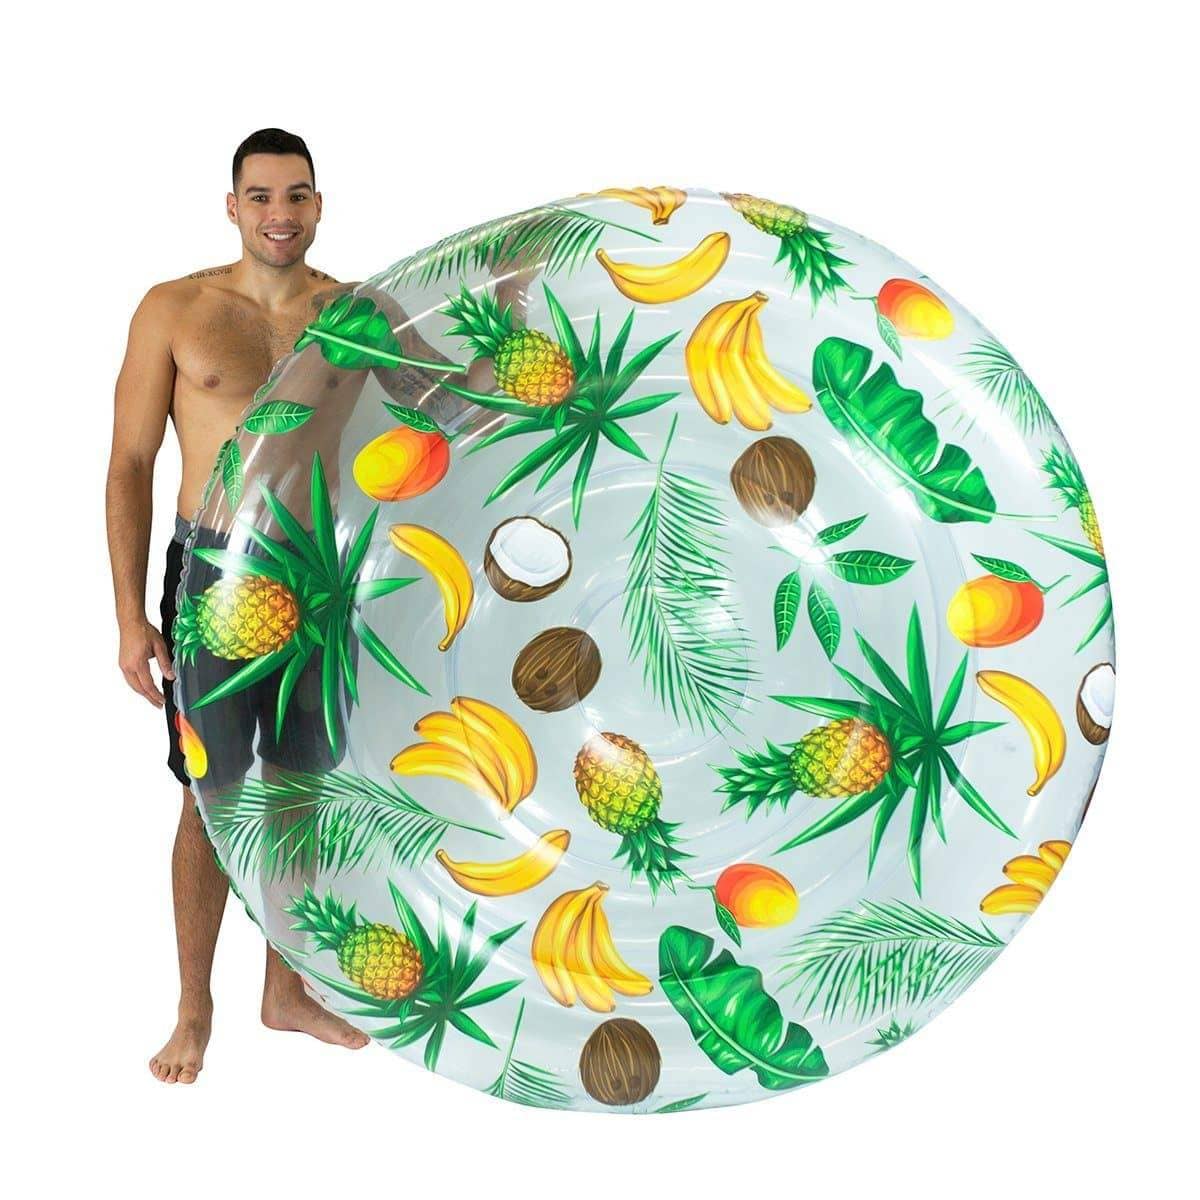 Giant Tropical Inflatable Fruit Island Pool Float 72" PoolCandy